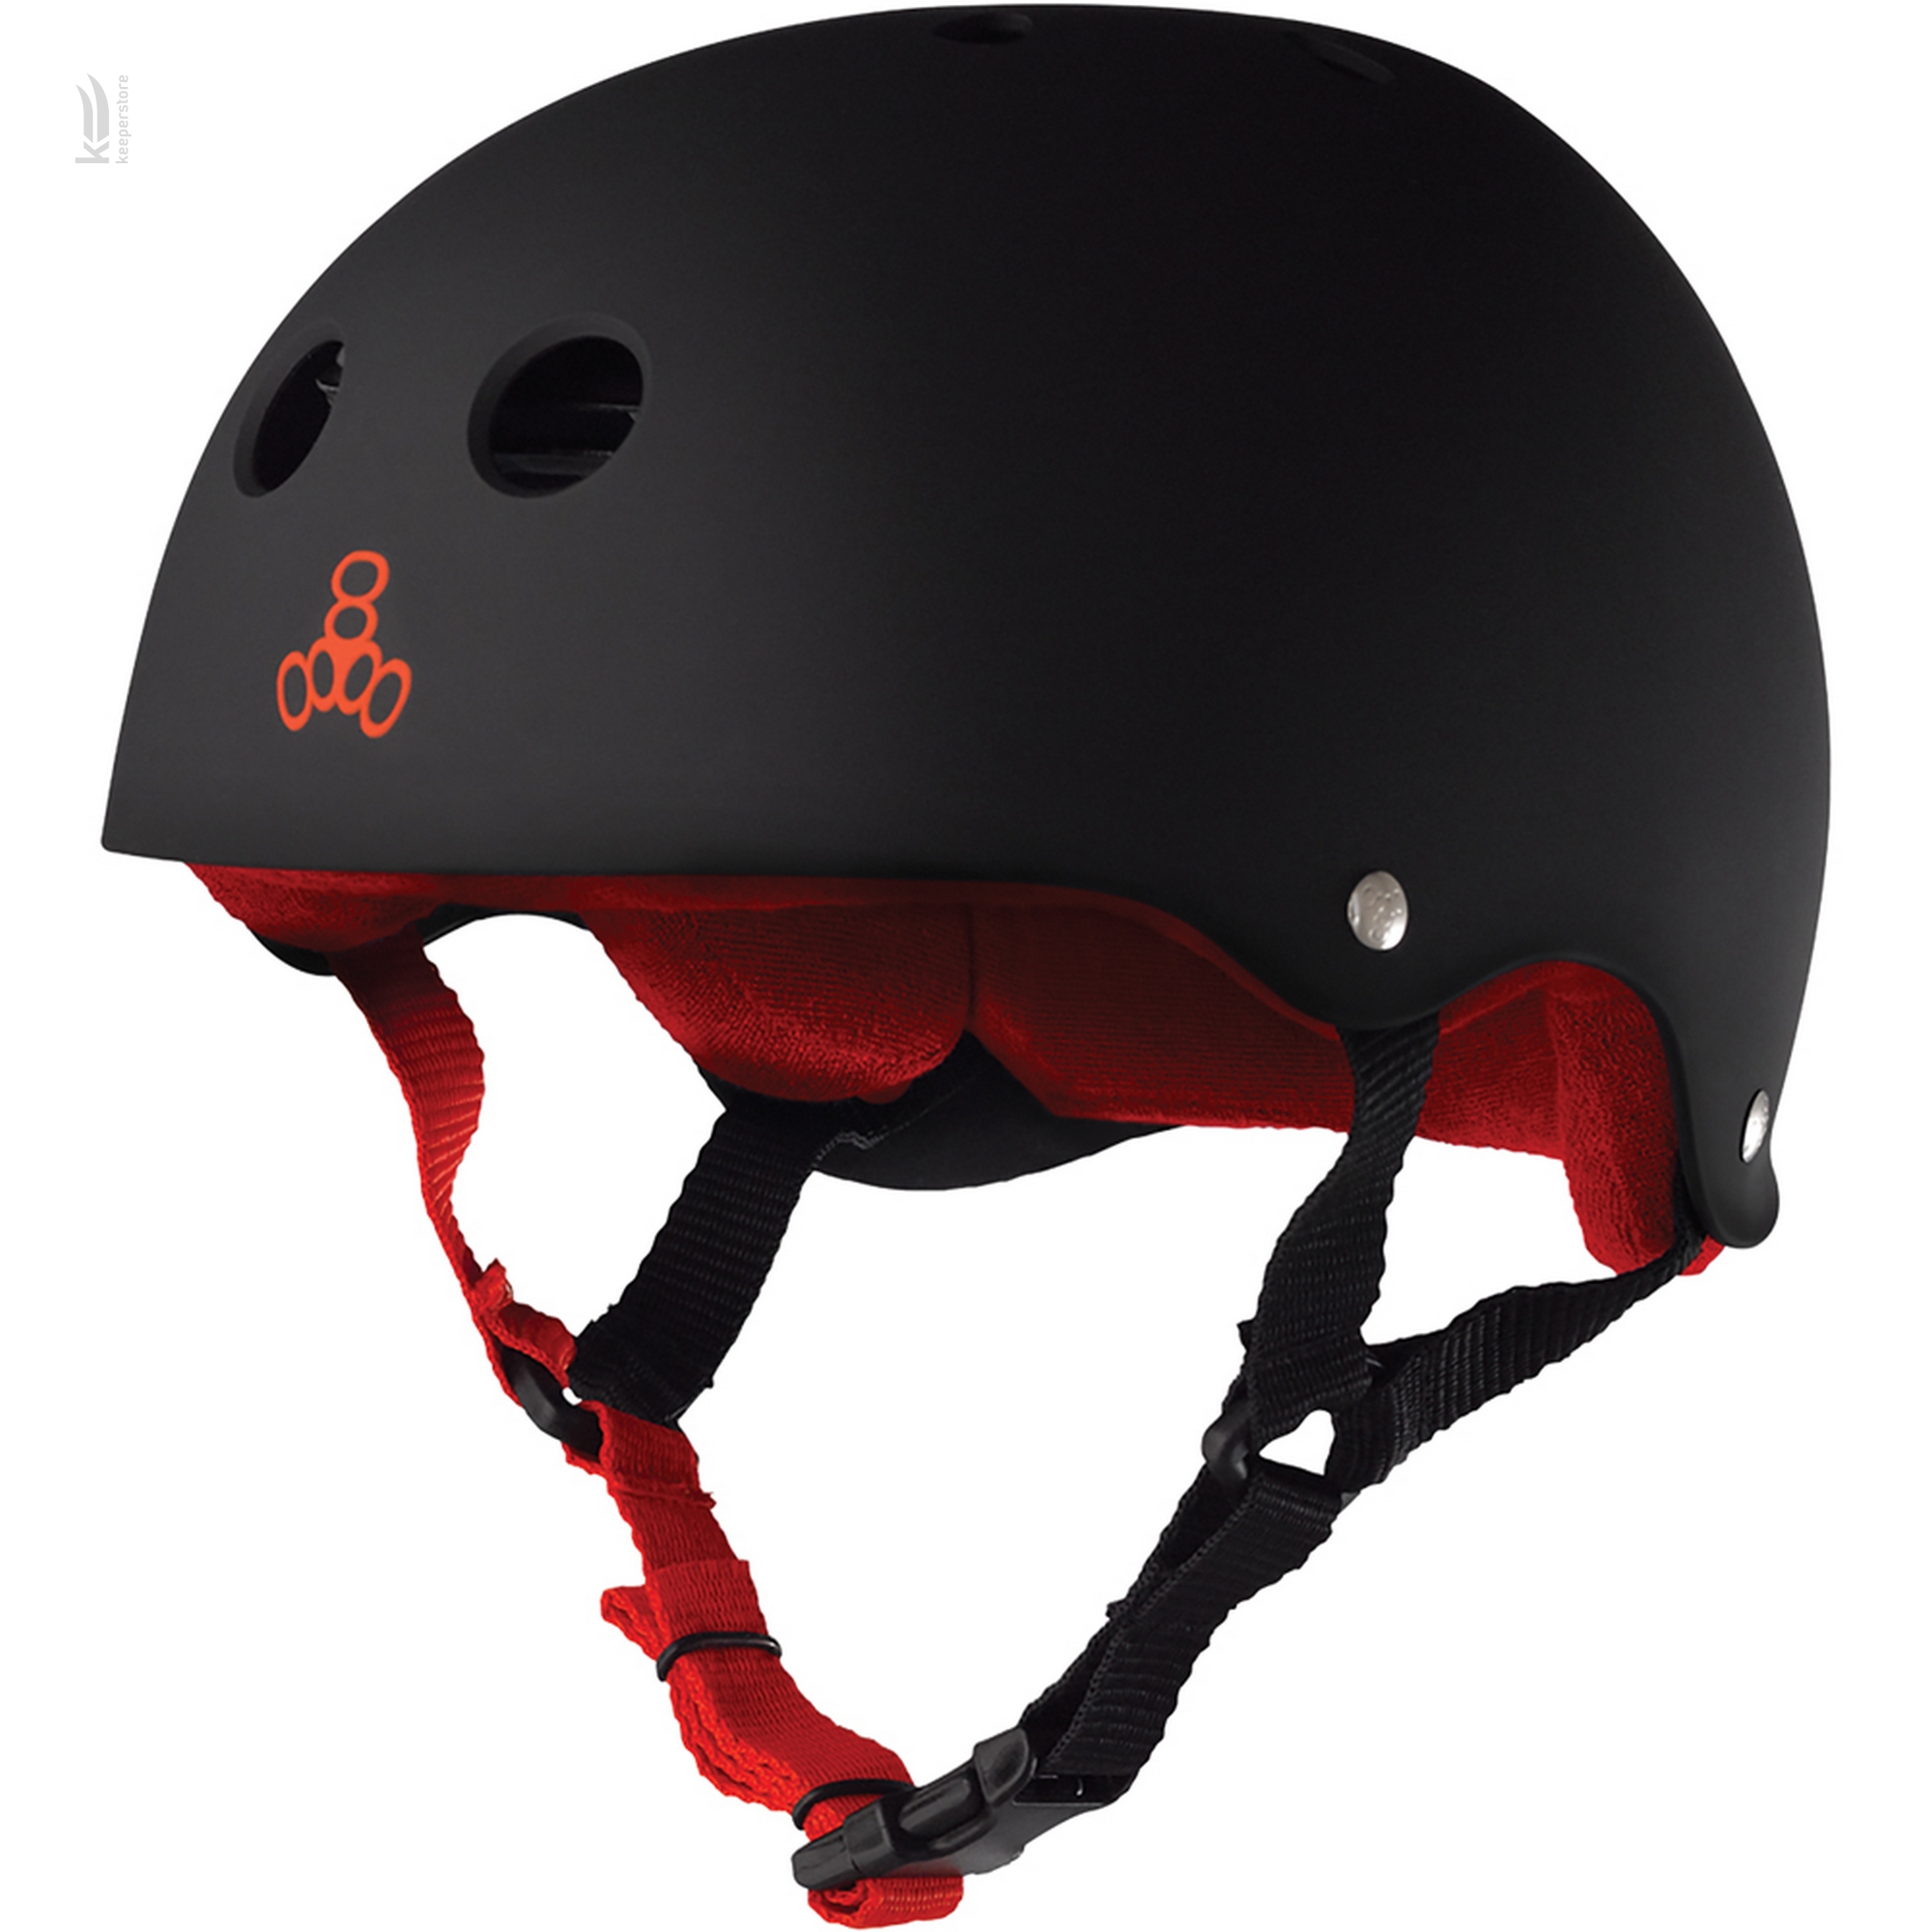 Защитный шлем казанок Triple8 Sweatsaver Helmet Black w/ Red (M)